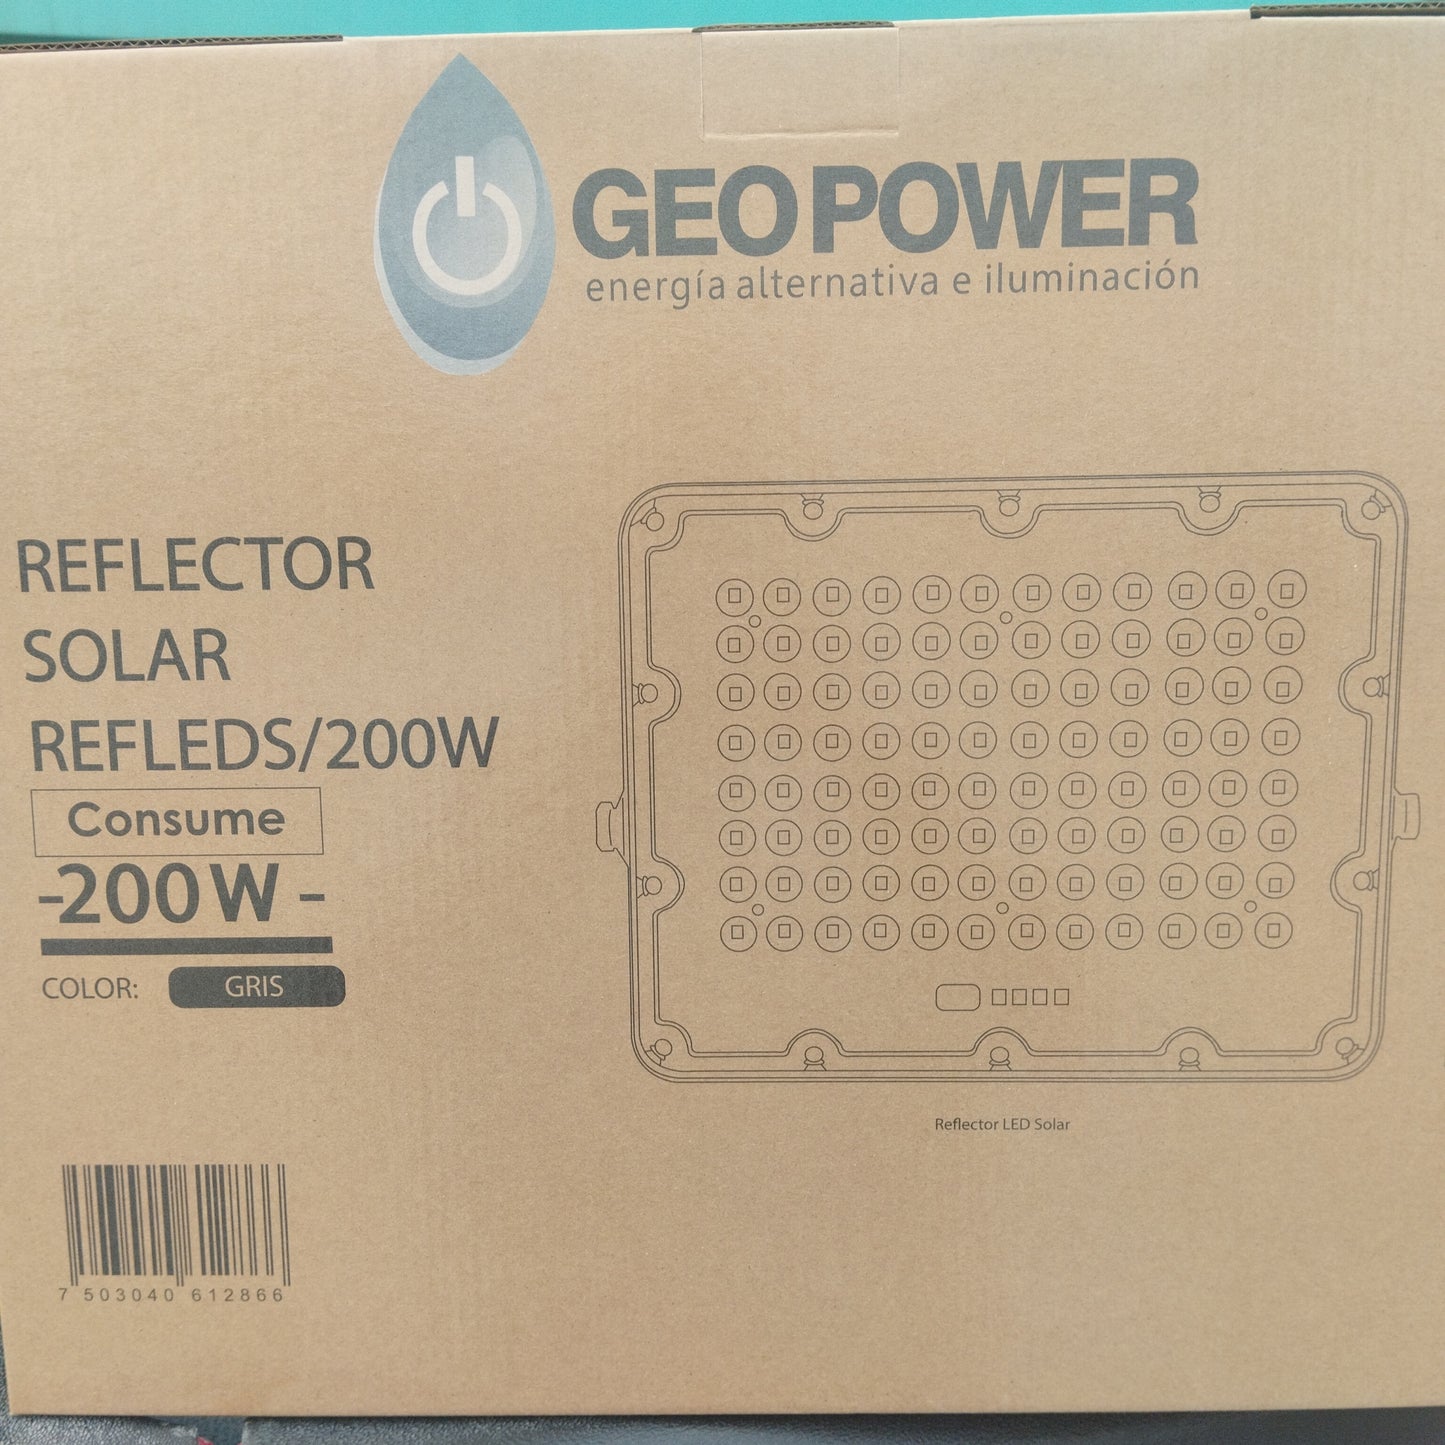 REFLECTOR SOLAR 200W 6500K REFLEDS/200W